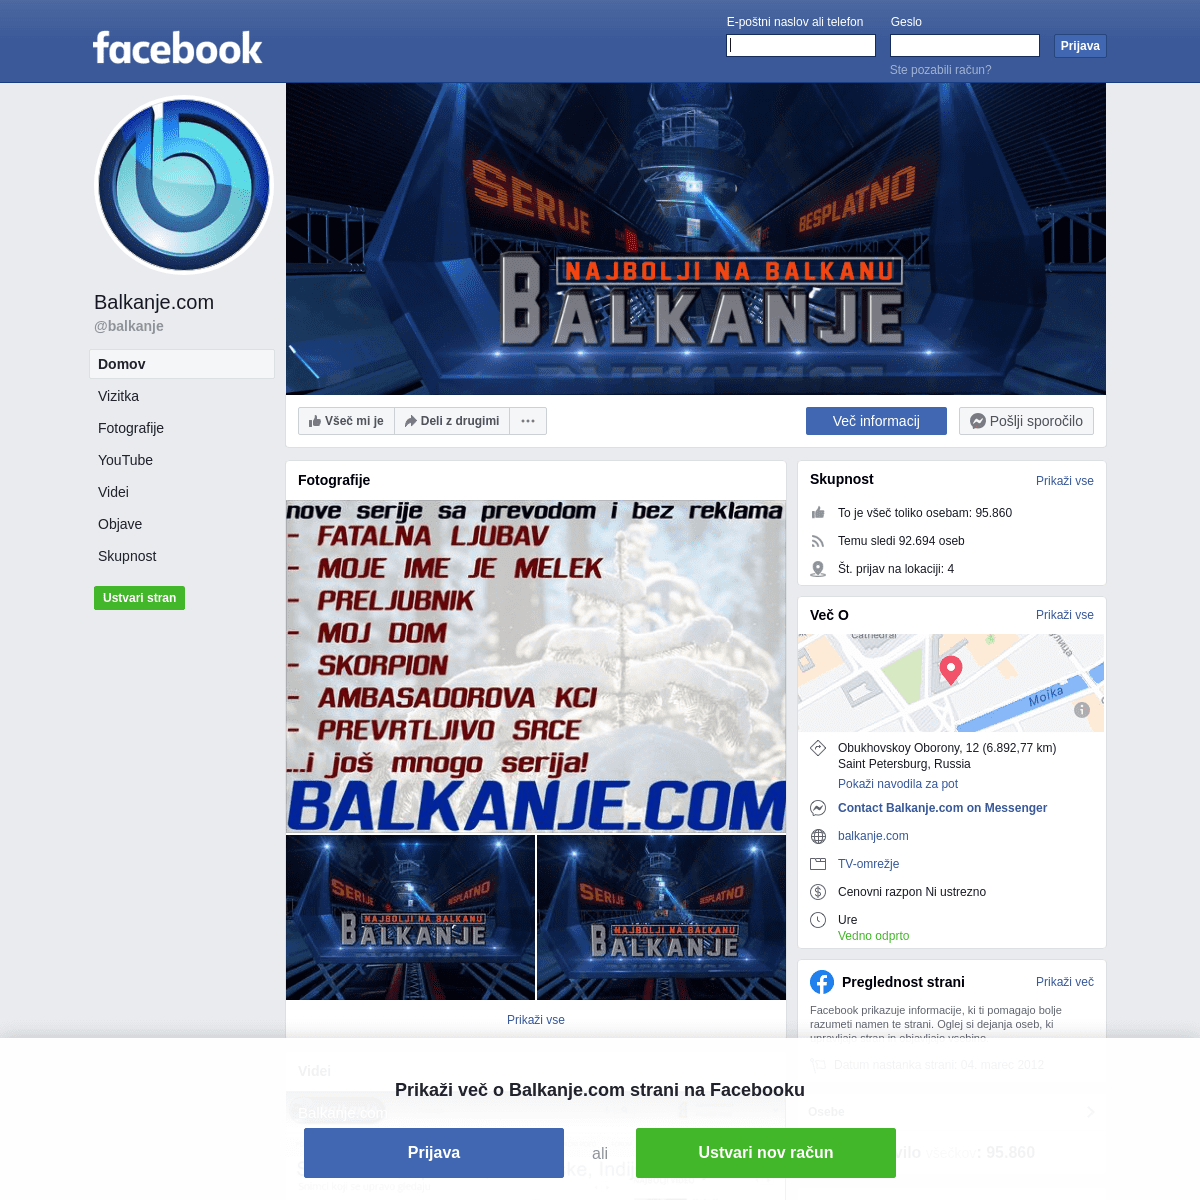 A complete backup of https://sl-si.facebook.com/balkanje